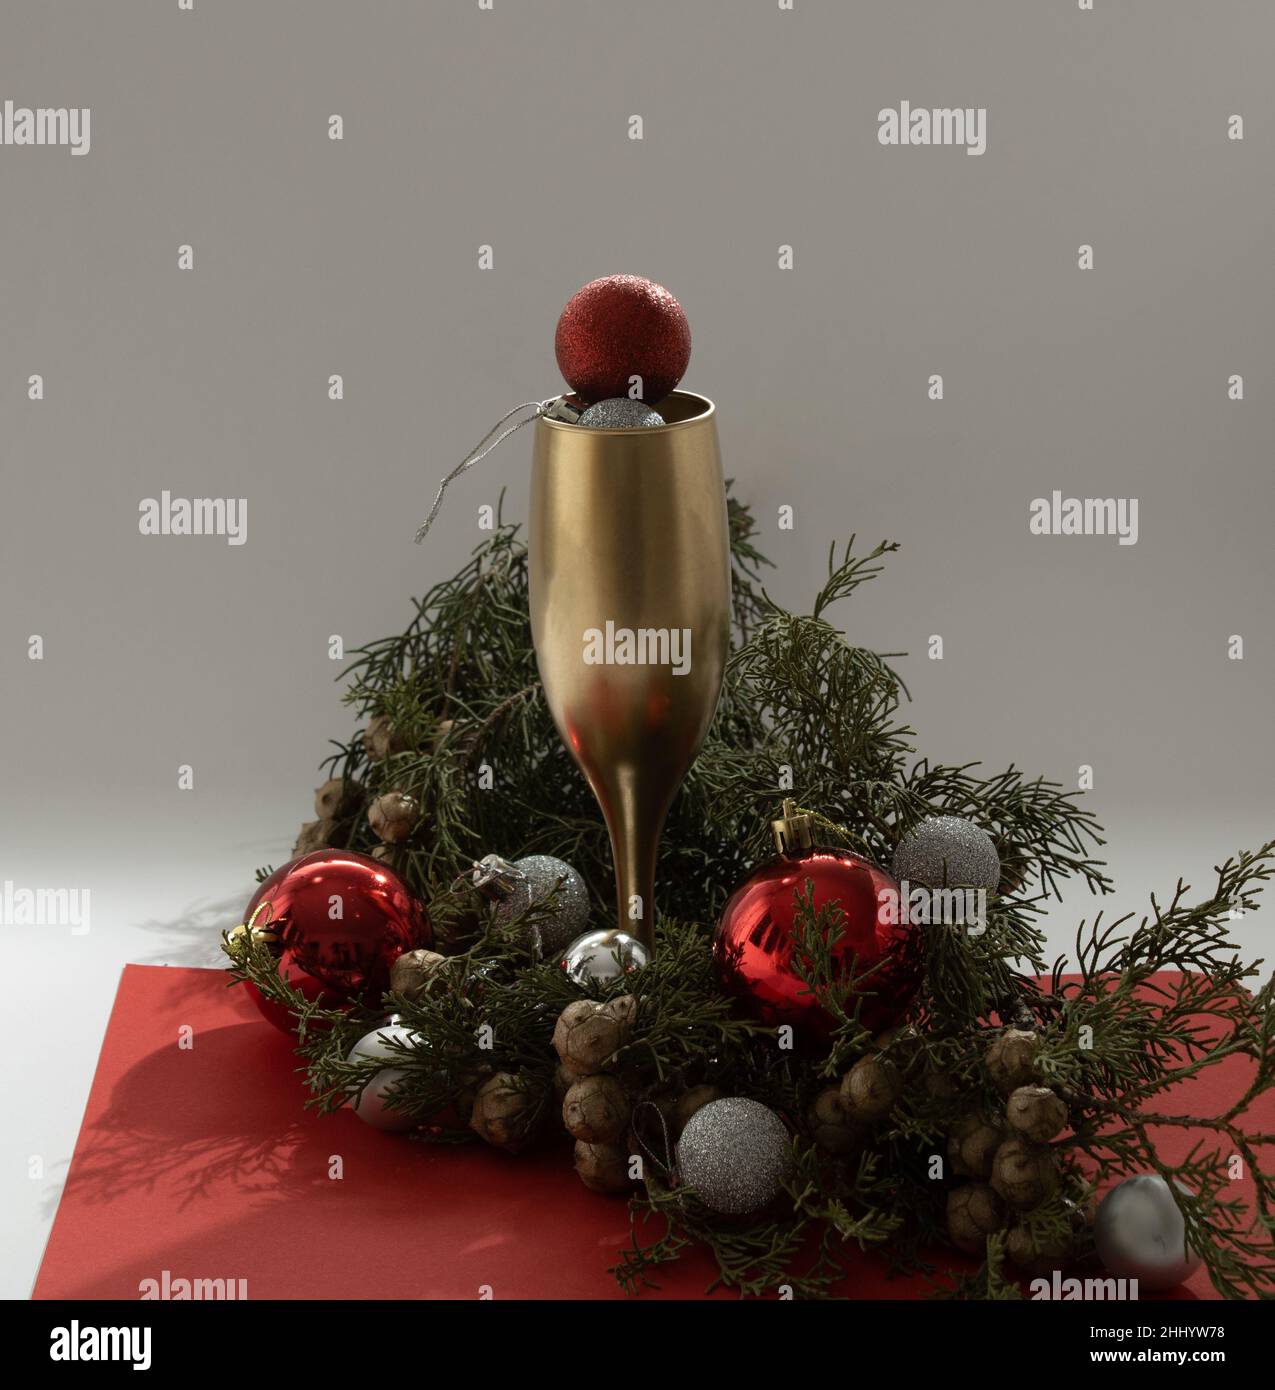 Weihnachtsbaum Arrangement mit Goldbecher und rotem Bobel. Hintergrund zur Silvesterparty. Stockfoto